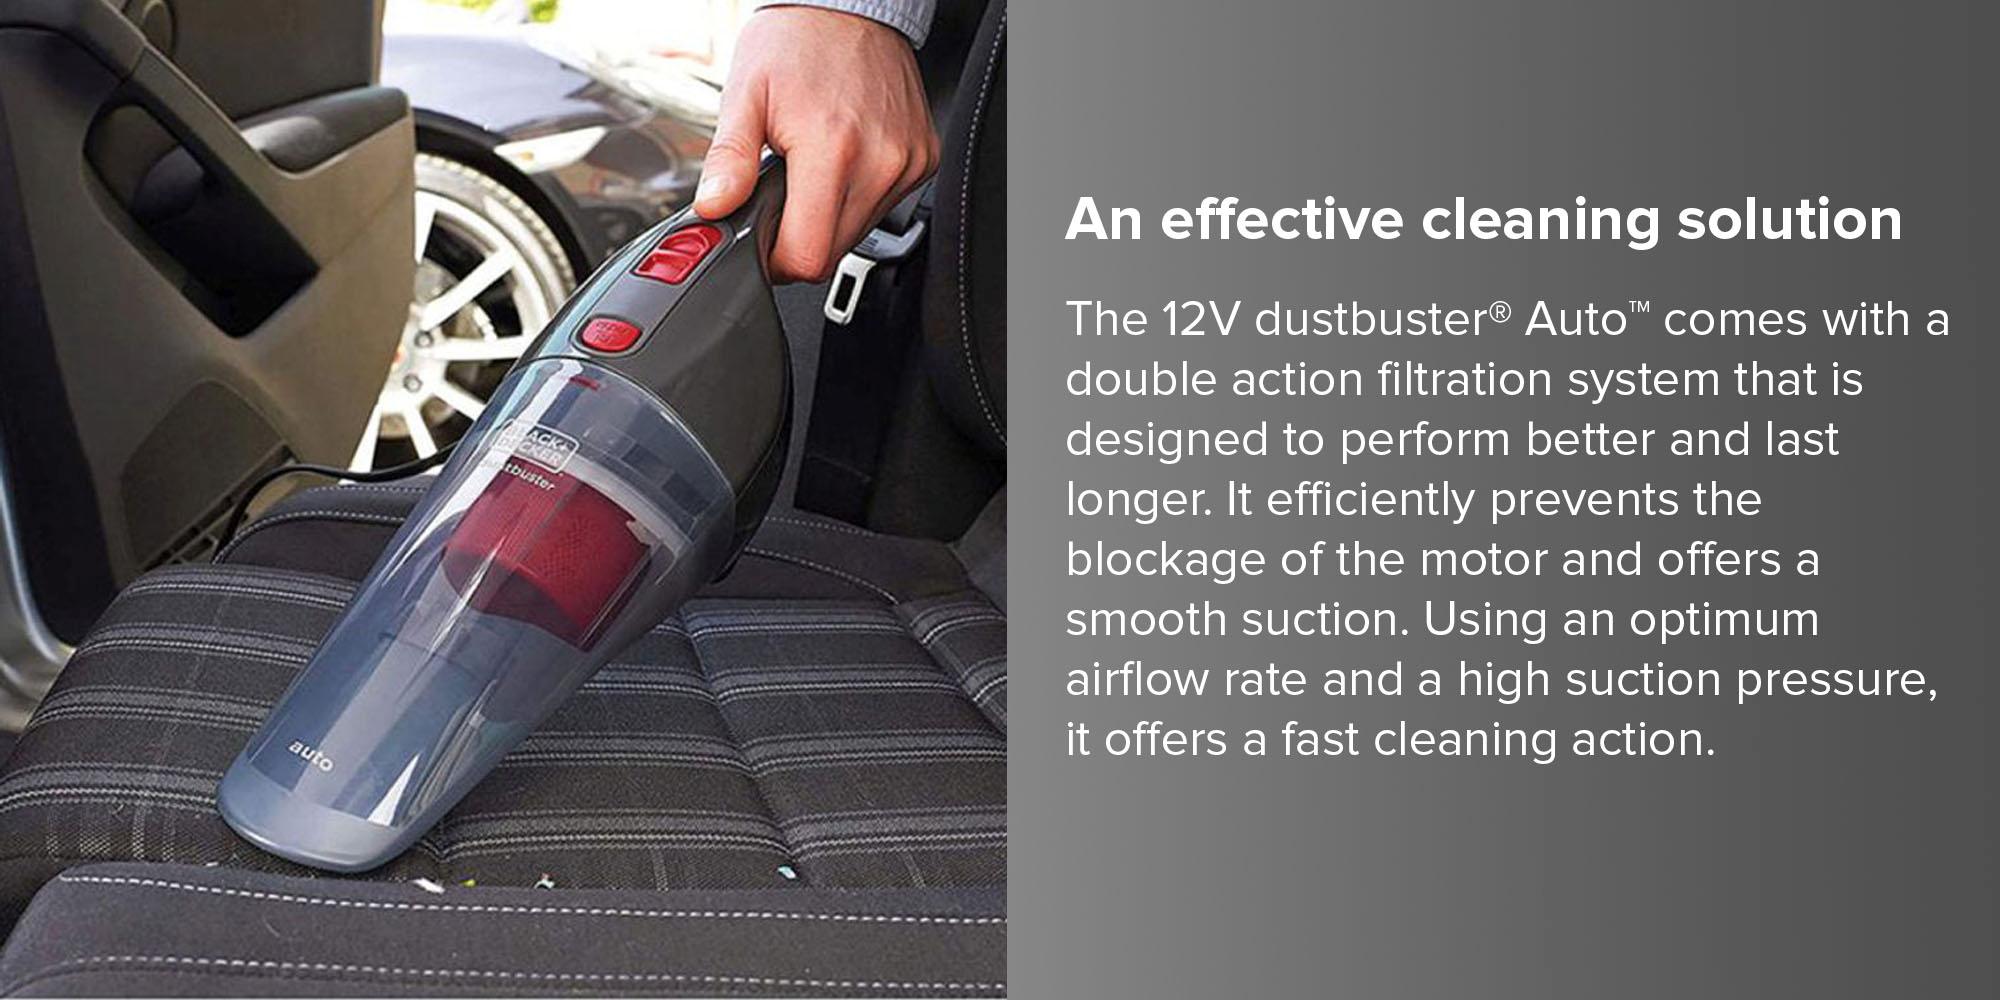 Black & Decker NV1200AV-B5  | Black & Decker Handheld Vacuum Cleaner 